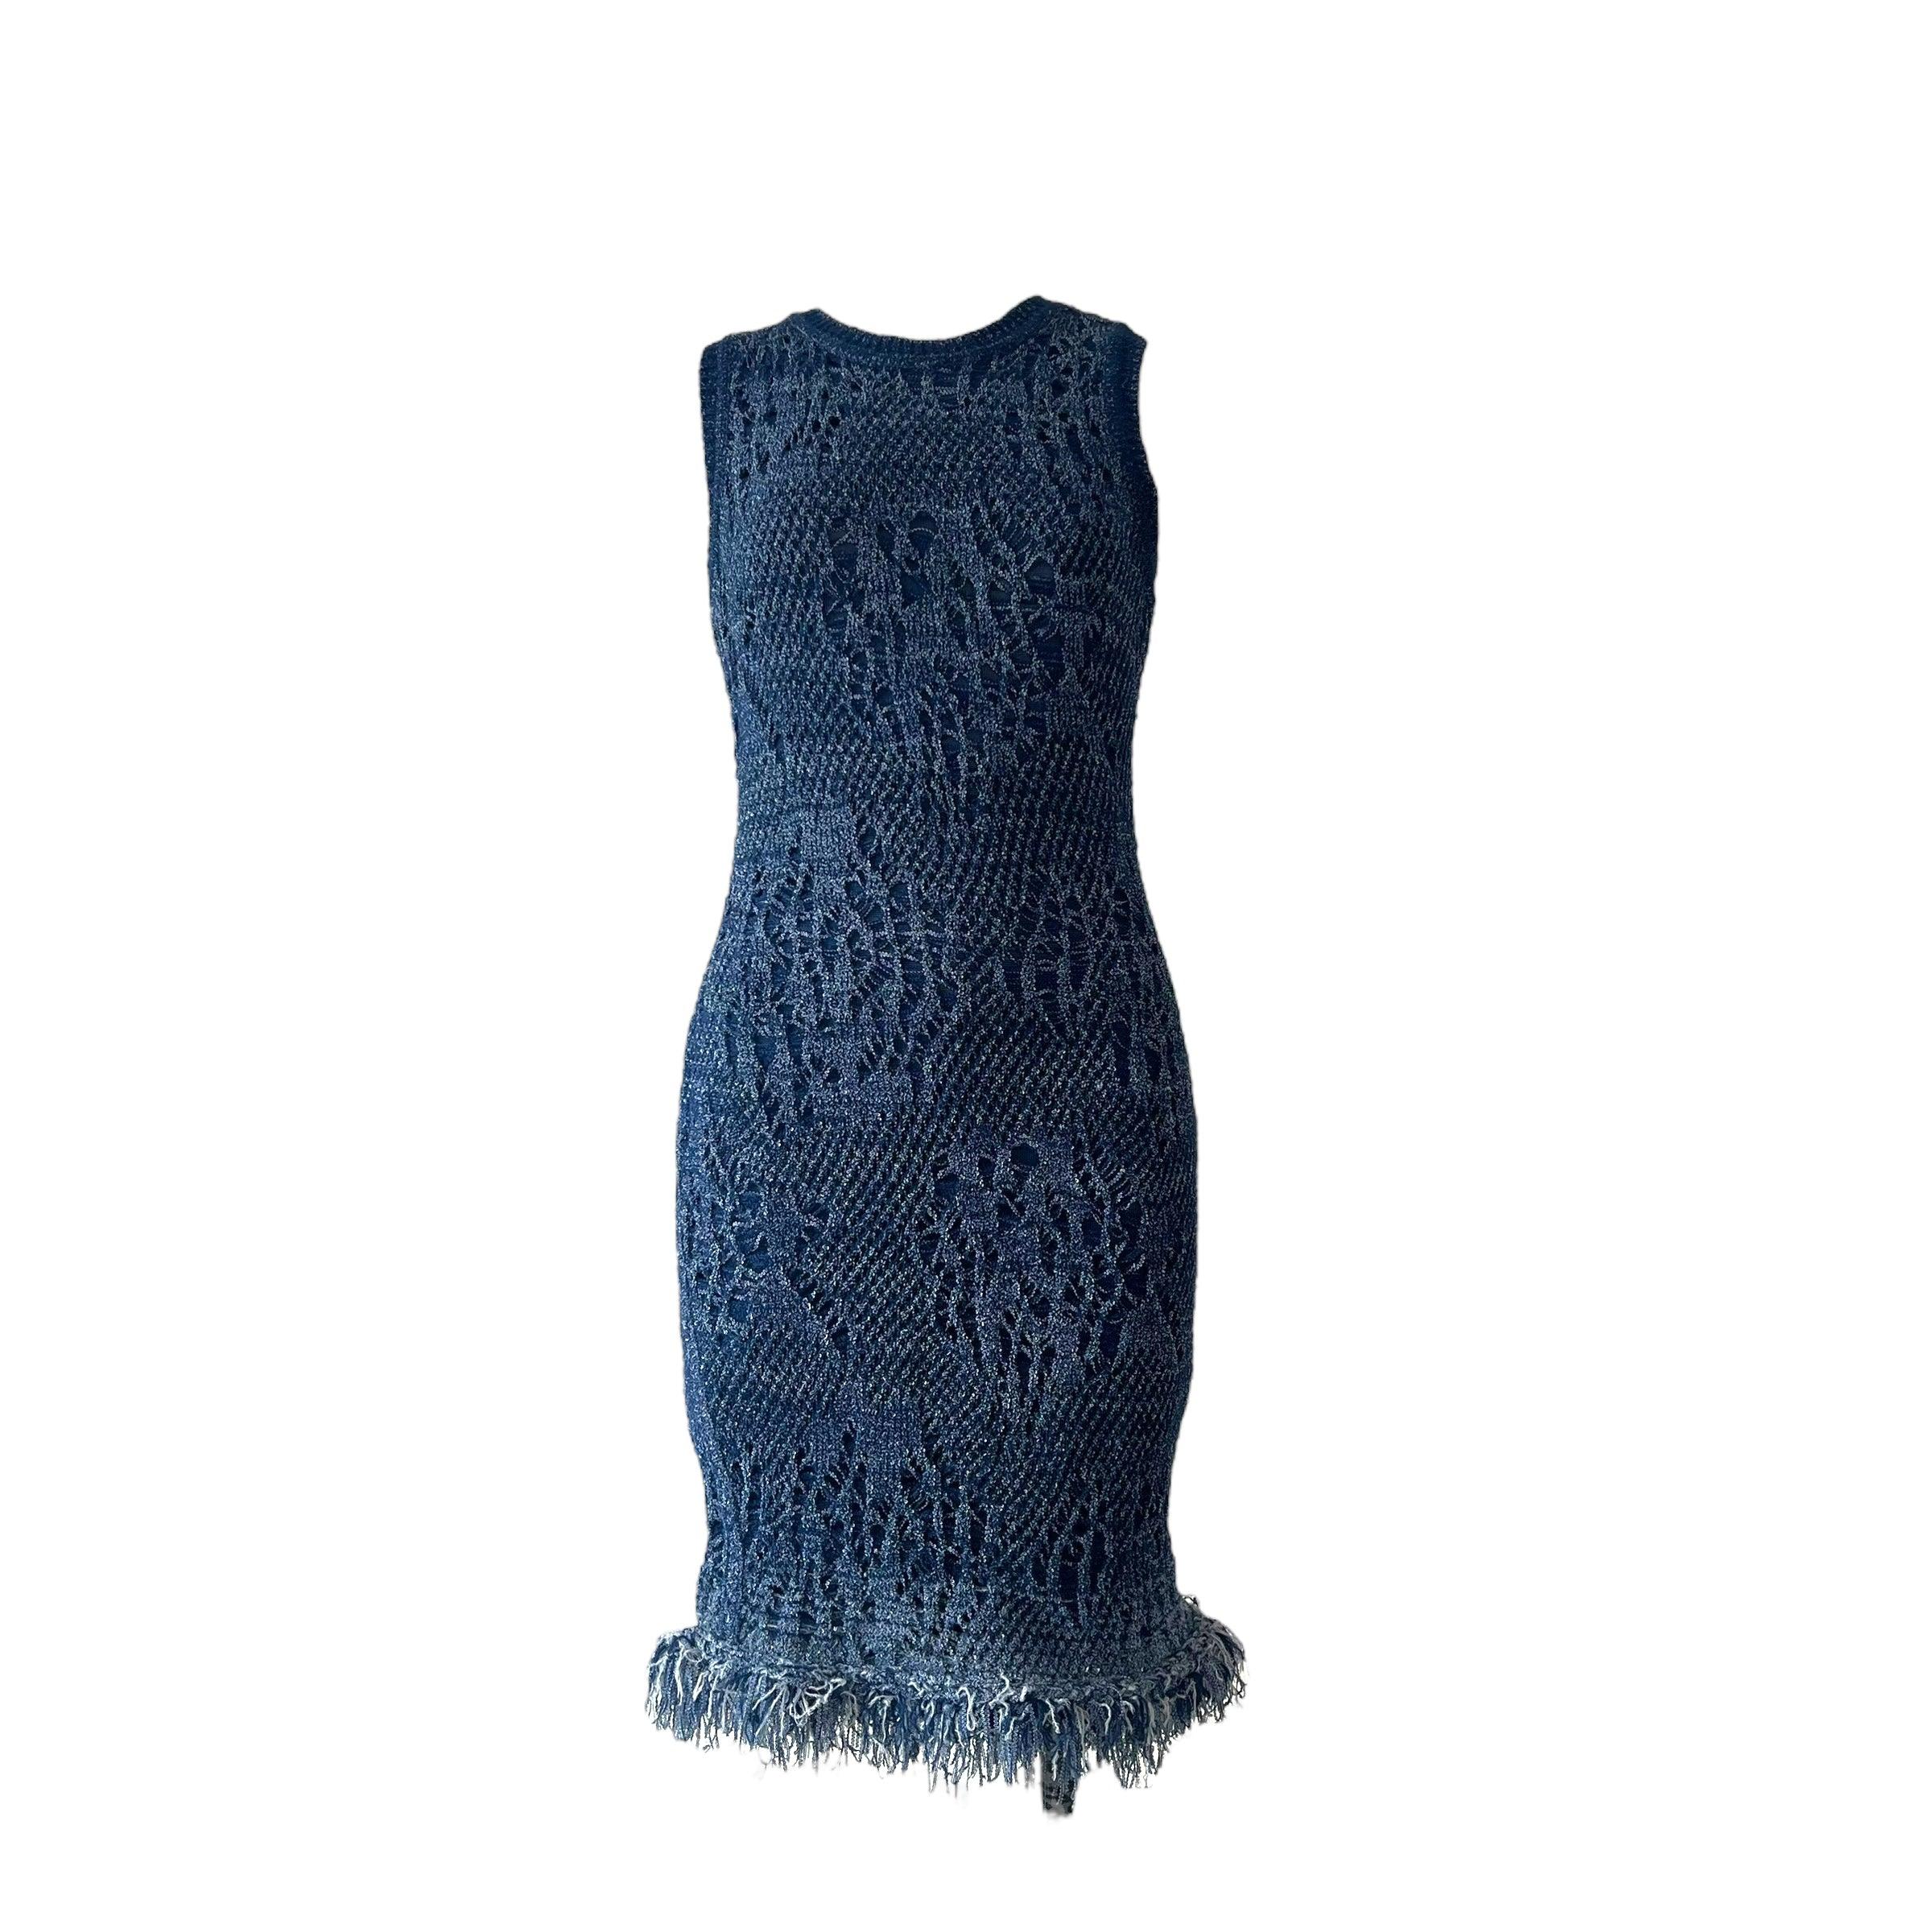 Das kultige blaue Bodycon-Kleid von Christian Dior aus der Frühjahr-Sommer-Kollektion 2000, das von dem visionären Designer John Galliano sorgfältig entworfen wurde. Dieses knielange Kleid hat einen Rundhalsausschnitt und ist in verschiedenen